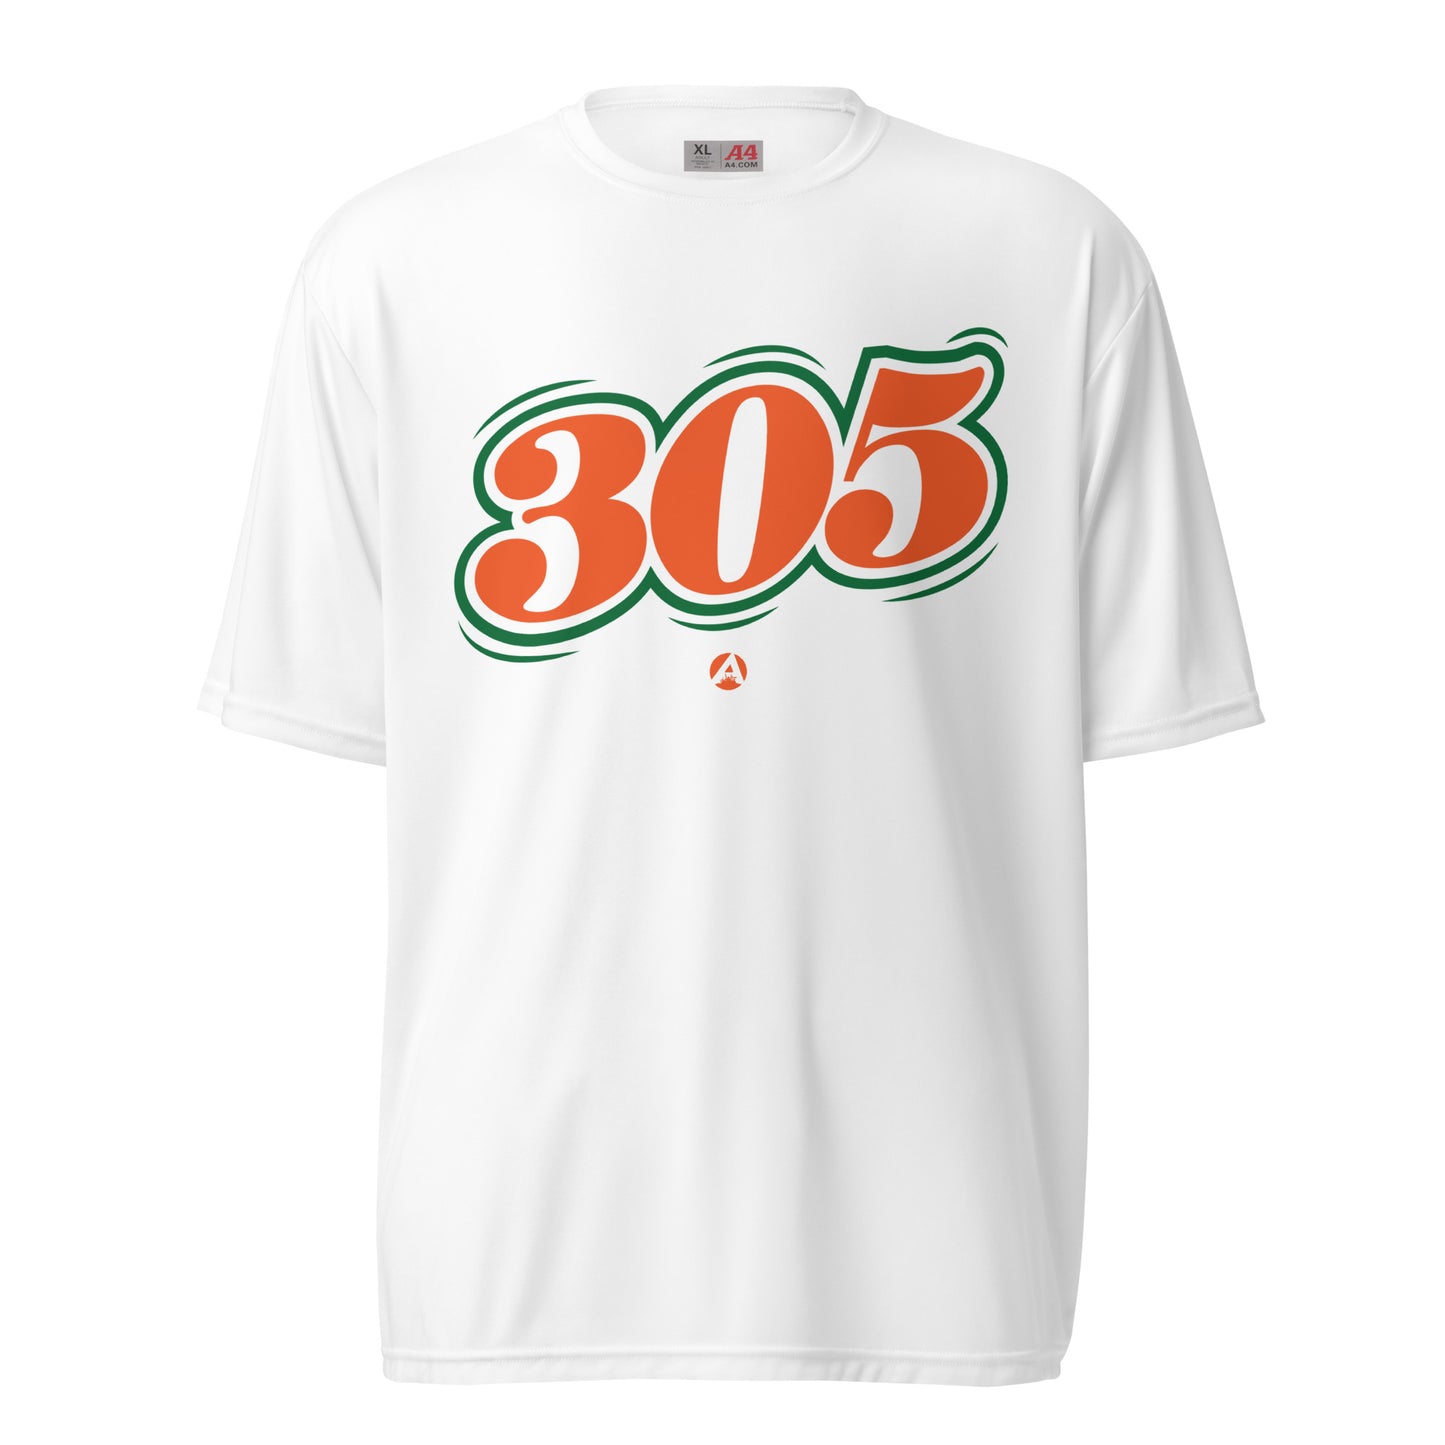 305 Dri-Fit Shirt